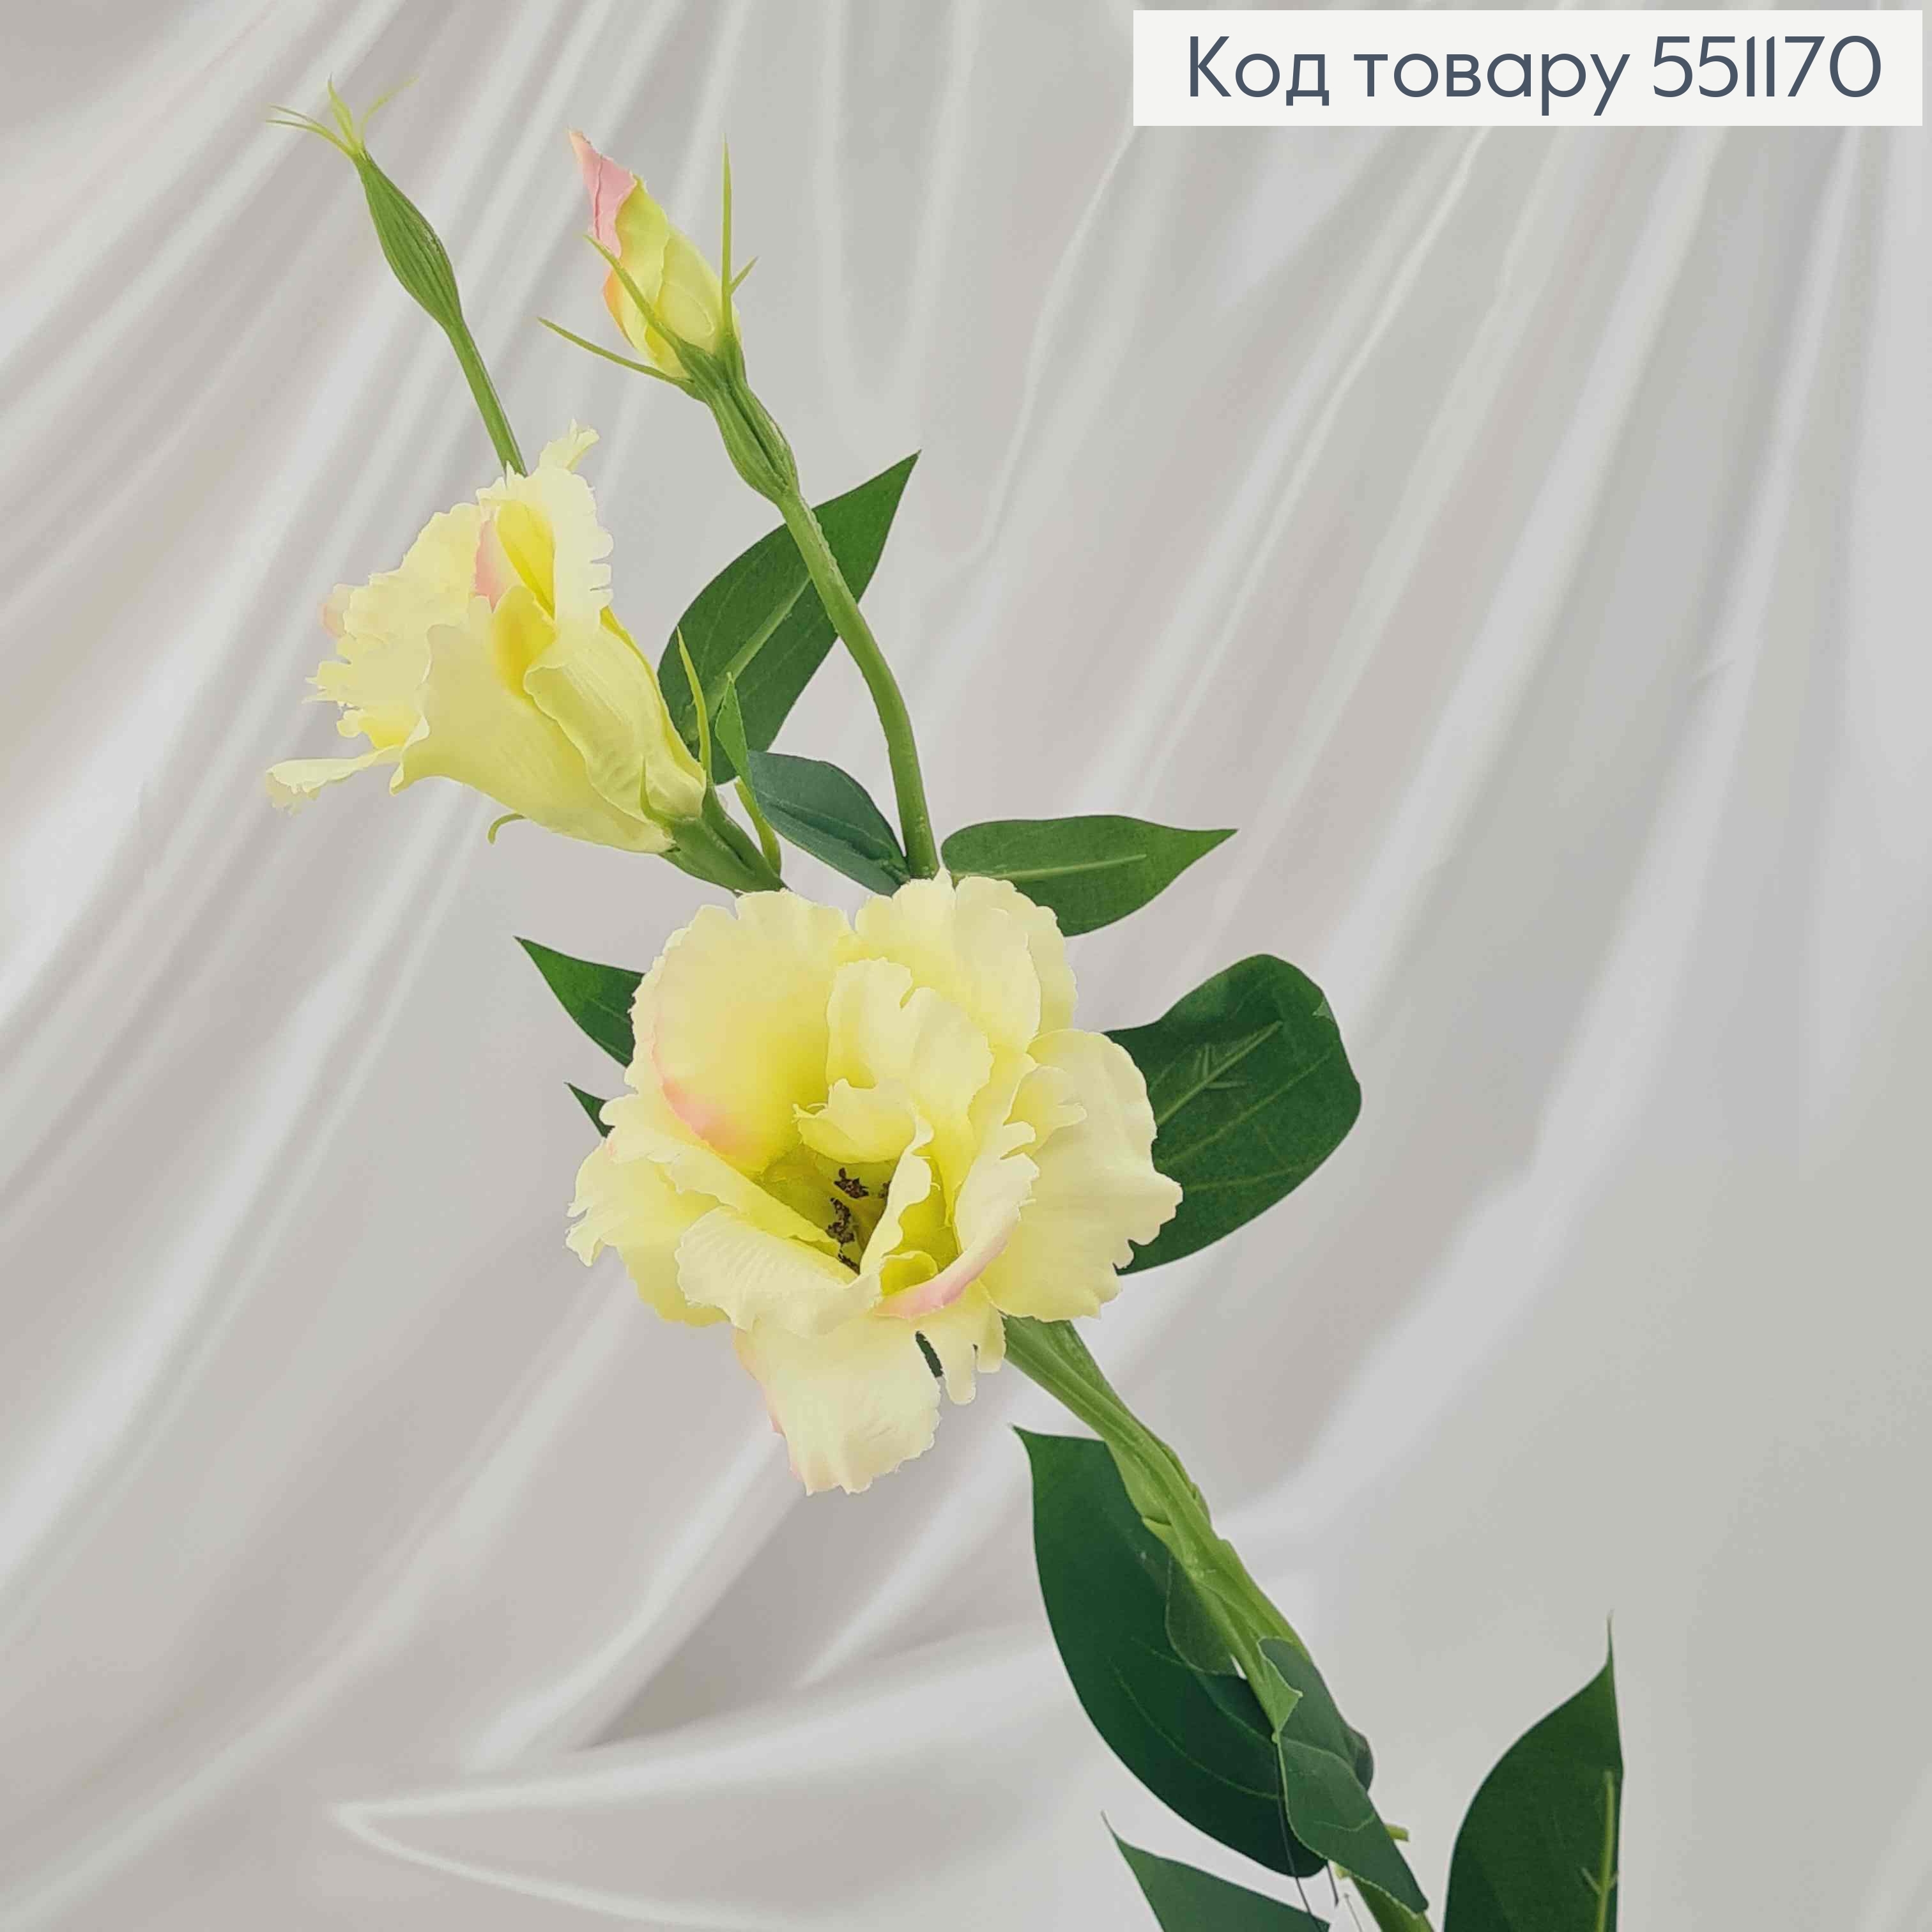 Искусственный цветок Эустомы, СВЕТ-САЛАТОВЫЙ, 2 цветка + 1 бутон, на металлическом стержне, 66см 551170 фото 2